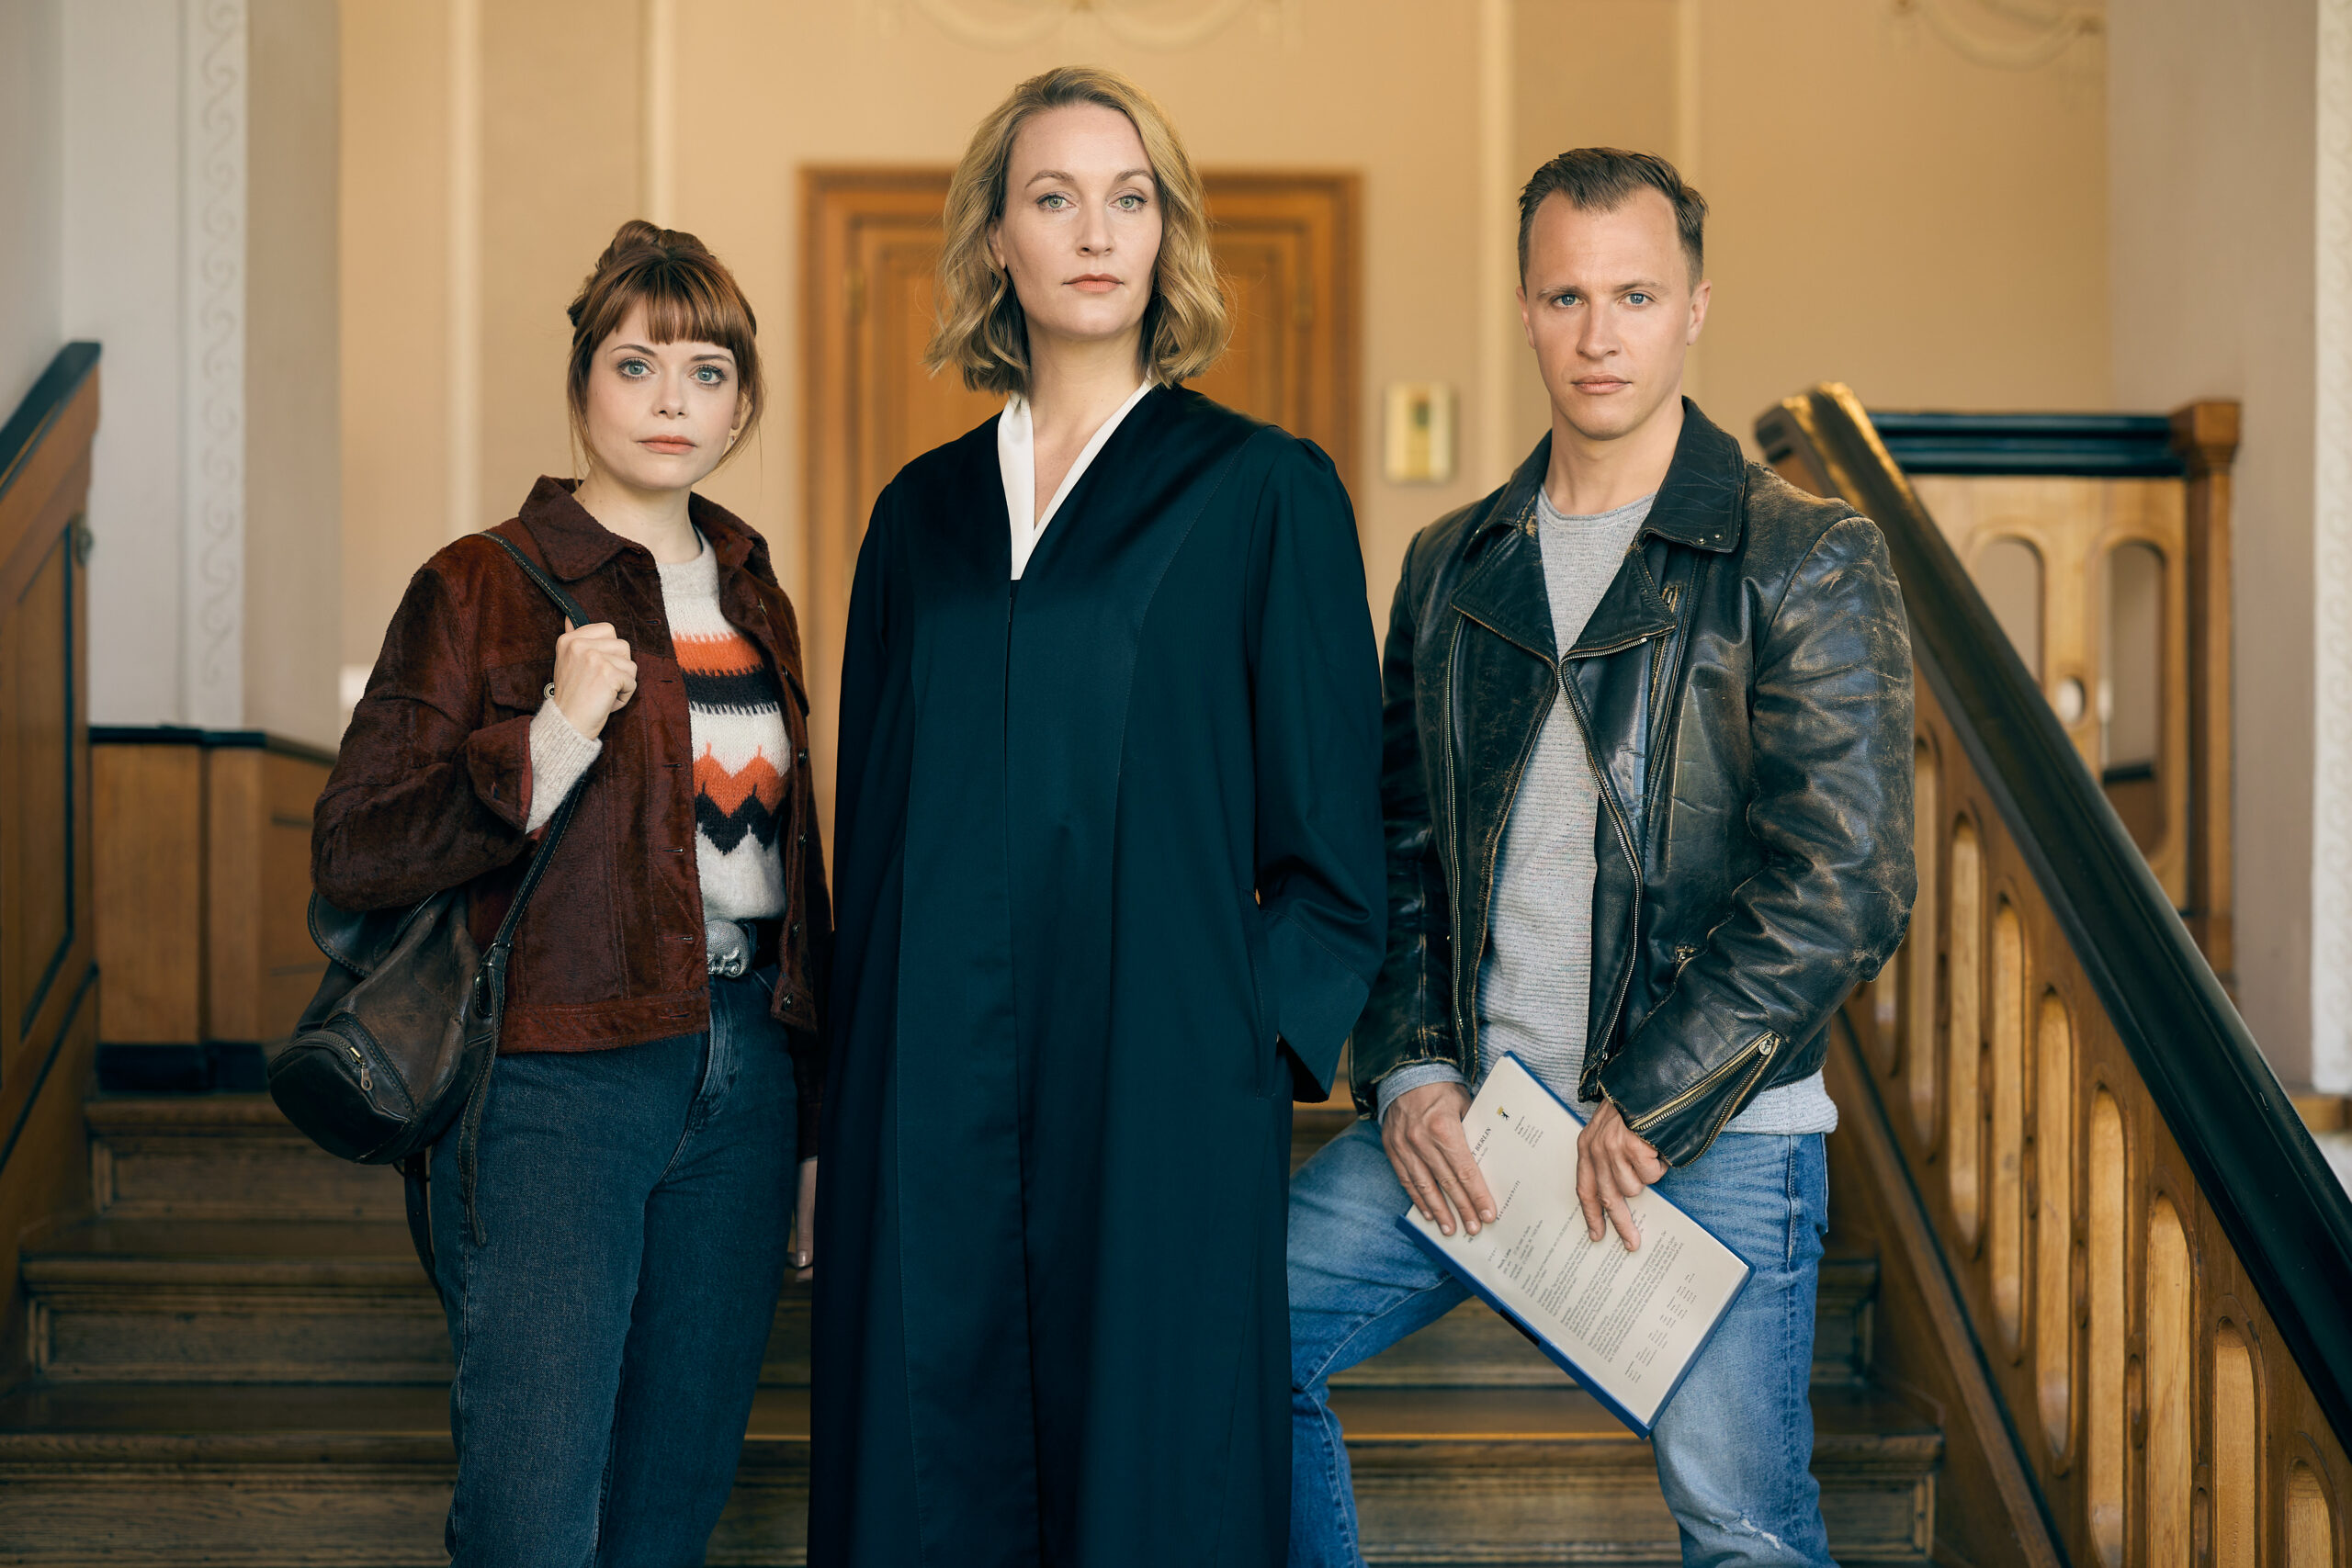 Die Heiland Wir sind Anwalt, Christina Athenstädt, Olga Film, 4. Staffel, Neue Folgen, Degeto, ARD, Start 4. Staffel